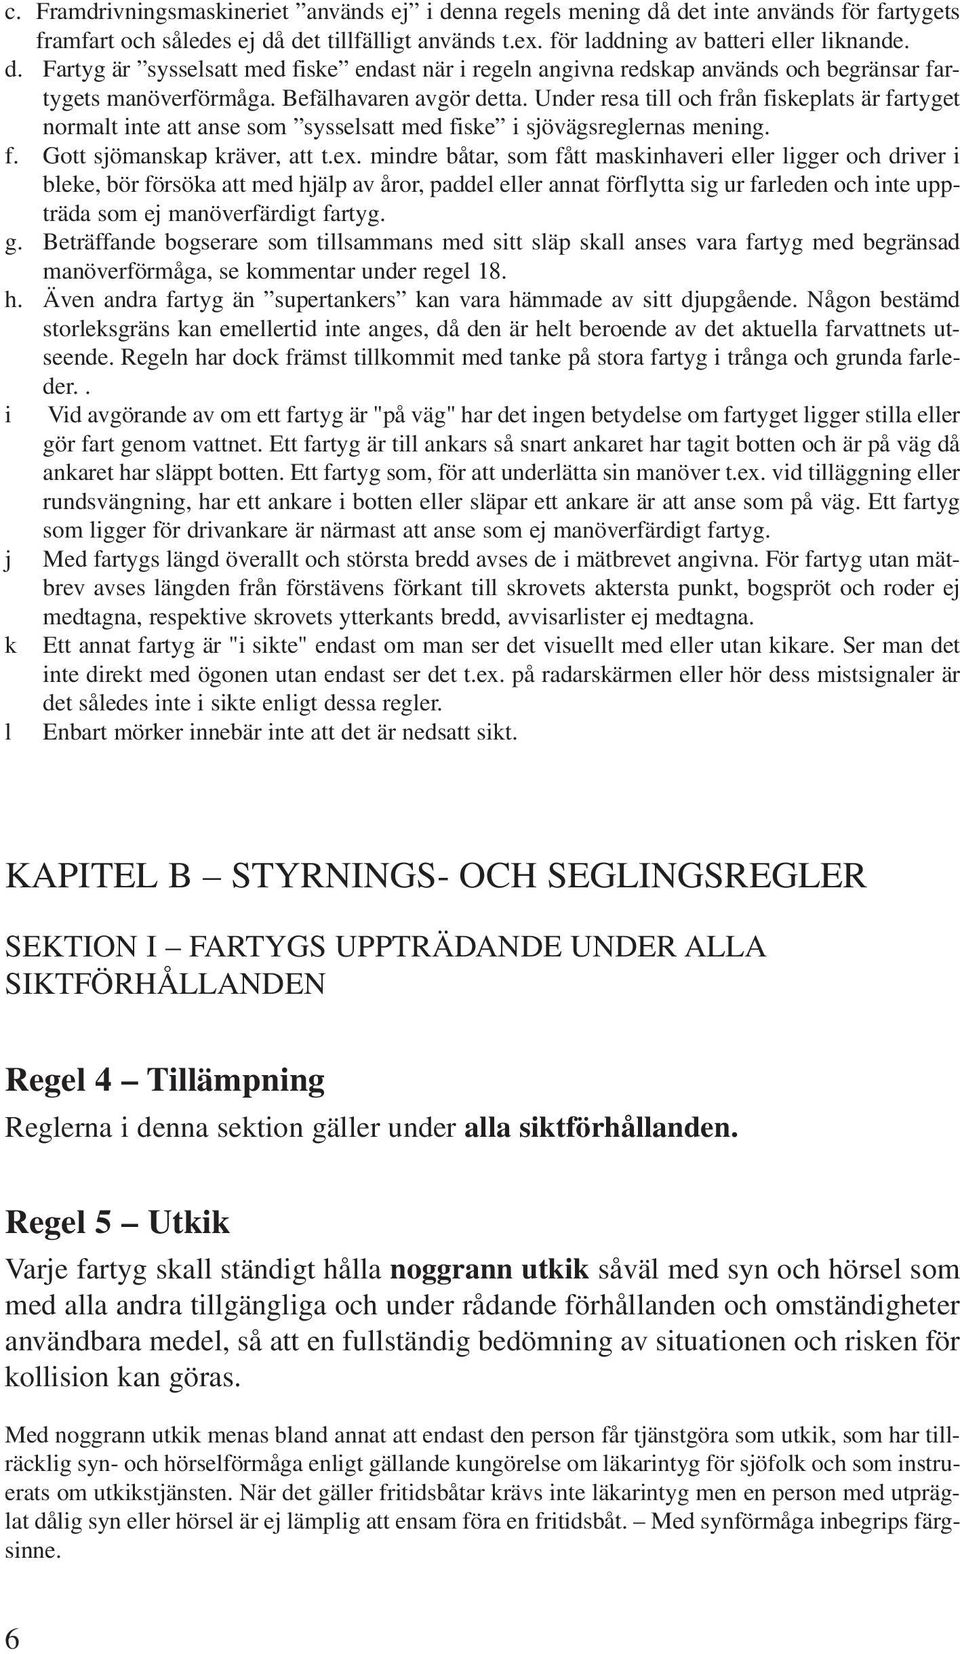 Sjötrafikföreskrifter m.m. - PDF Free Download